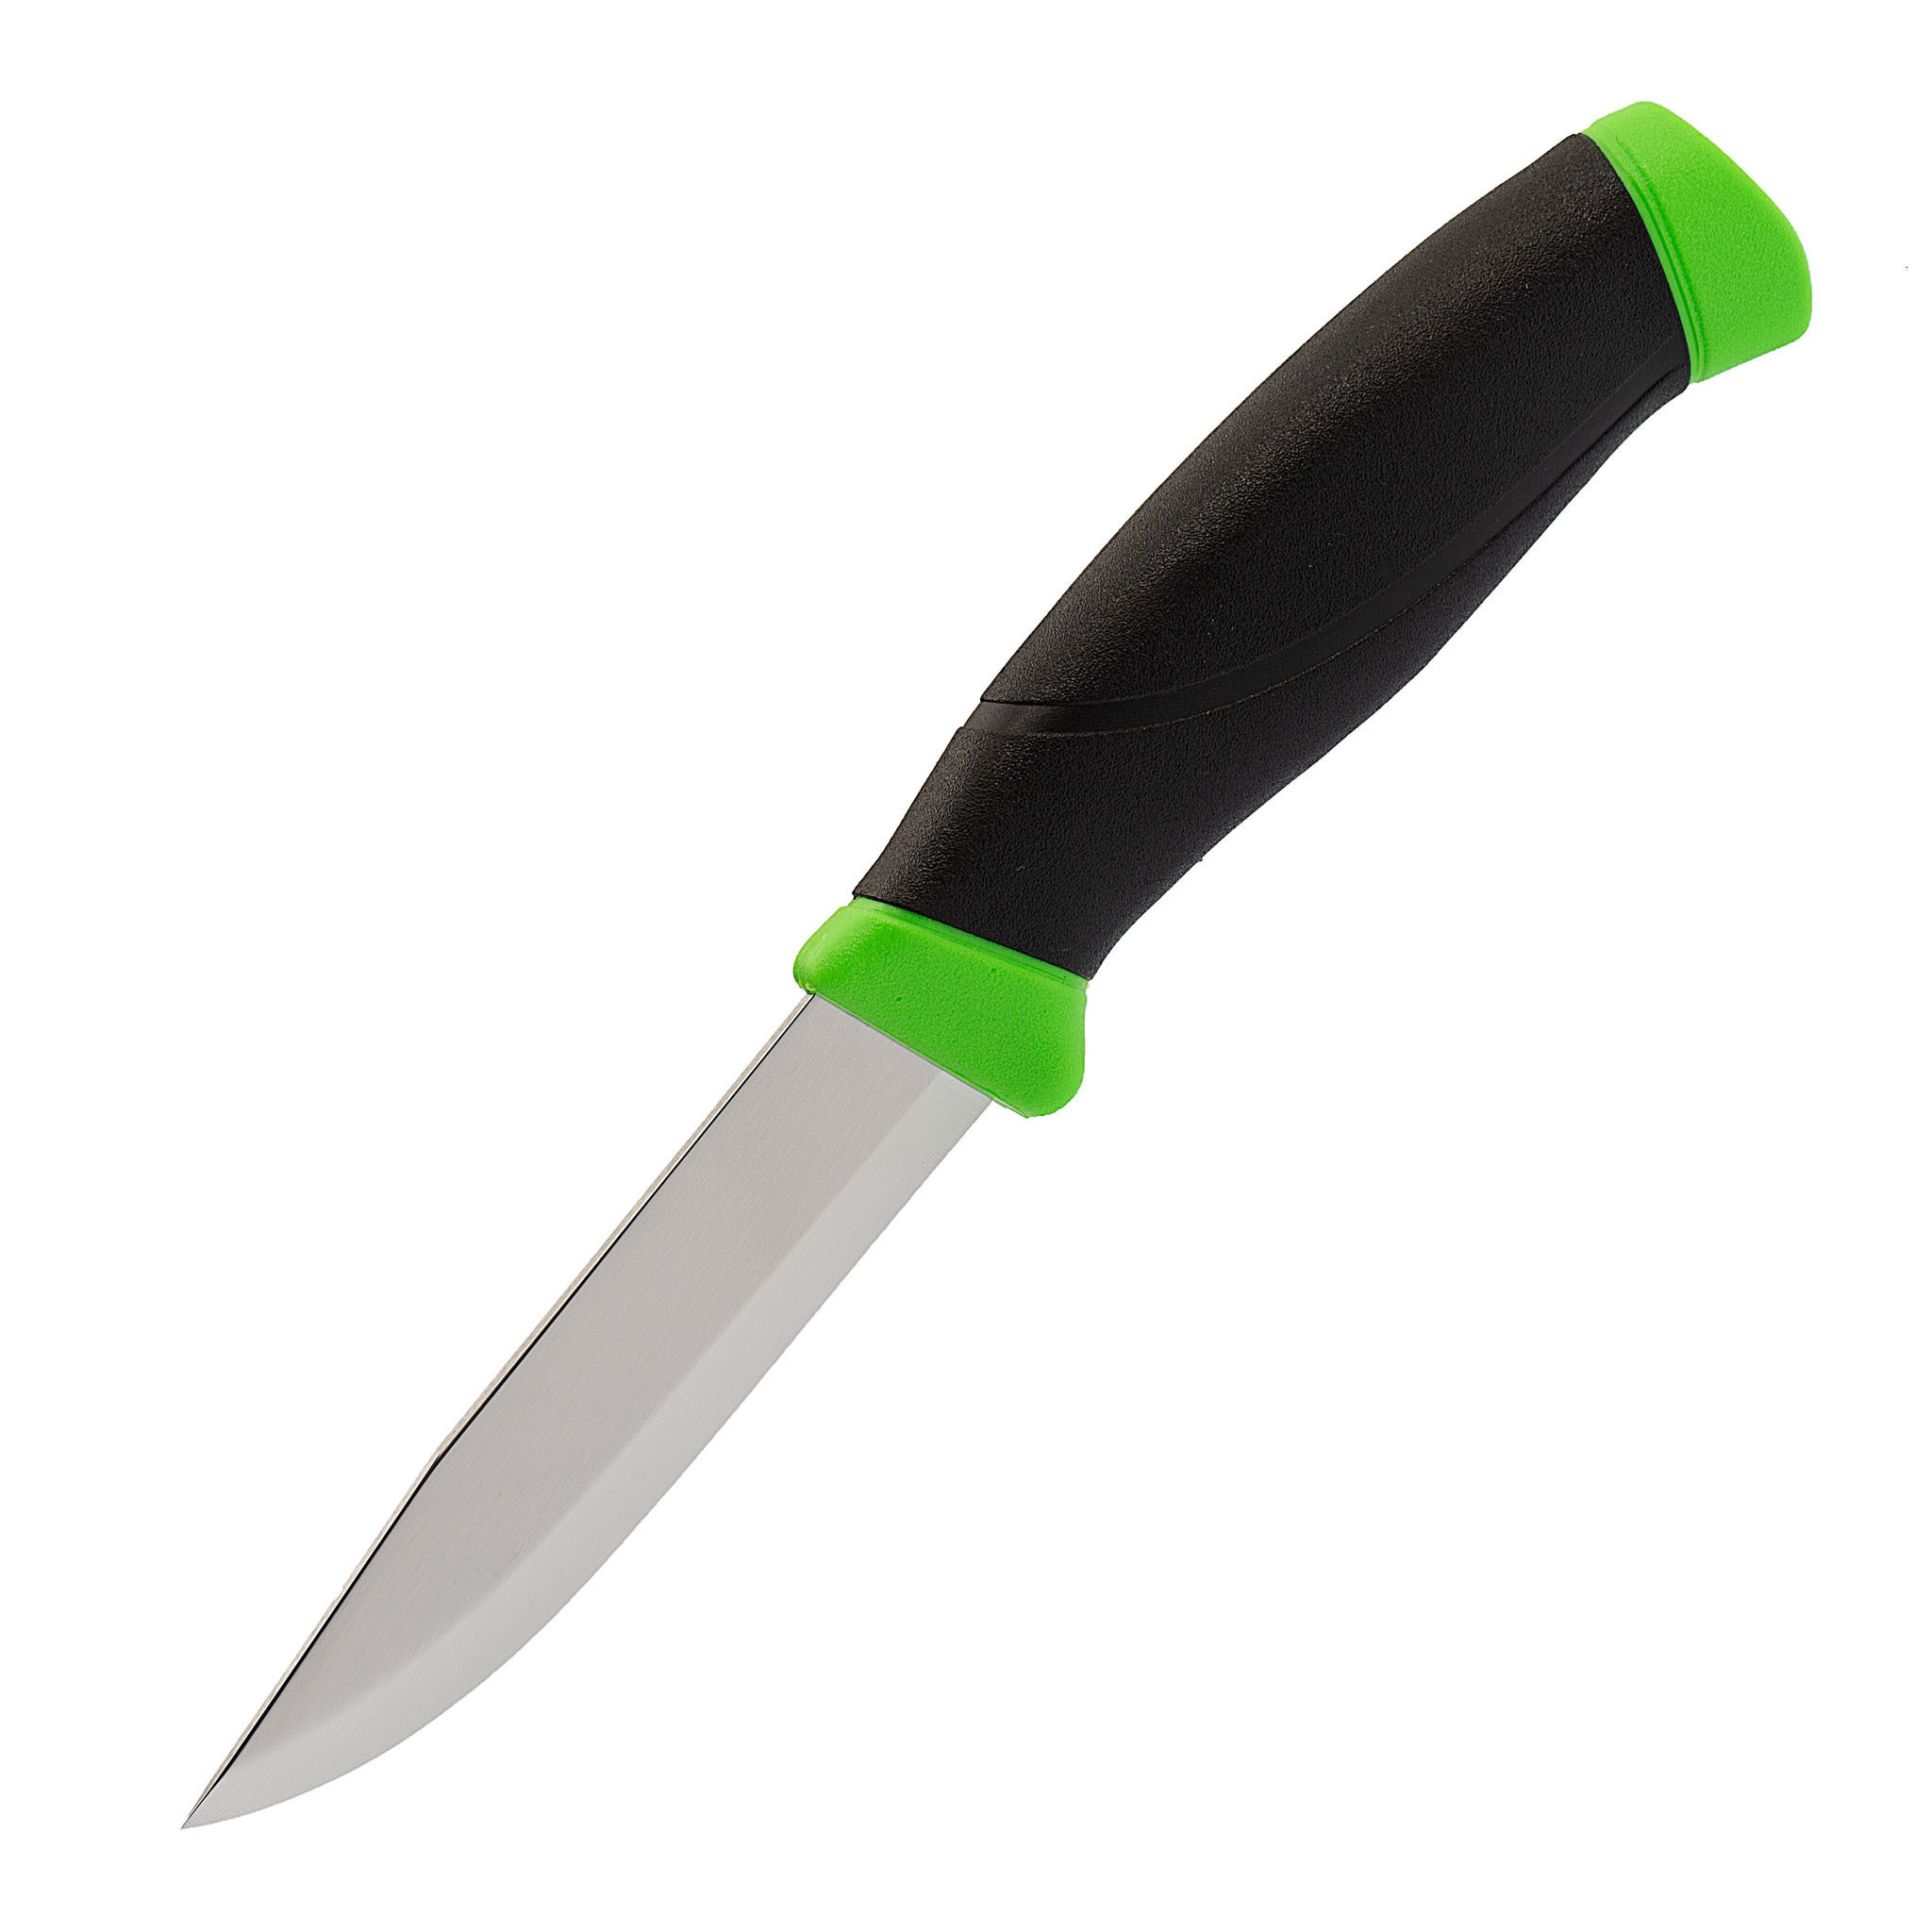 Нож с фиксированным лезвием Morakniv Companion Green, сталь Sandvik 12C27, рукоять пластик/резина, зеленый